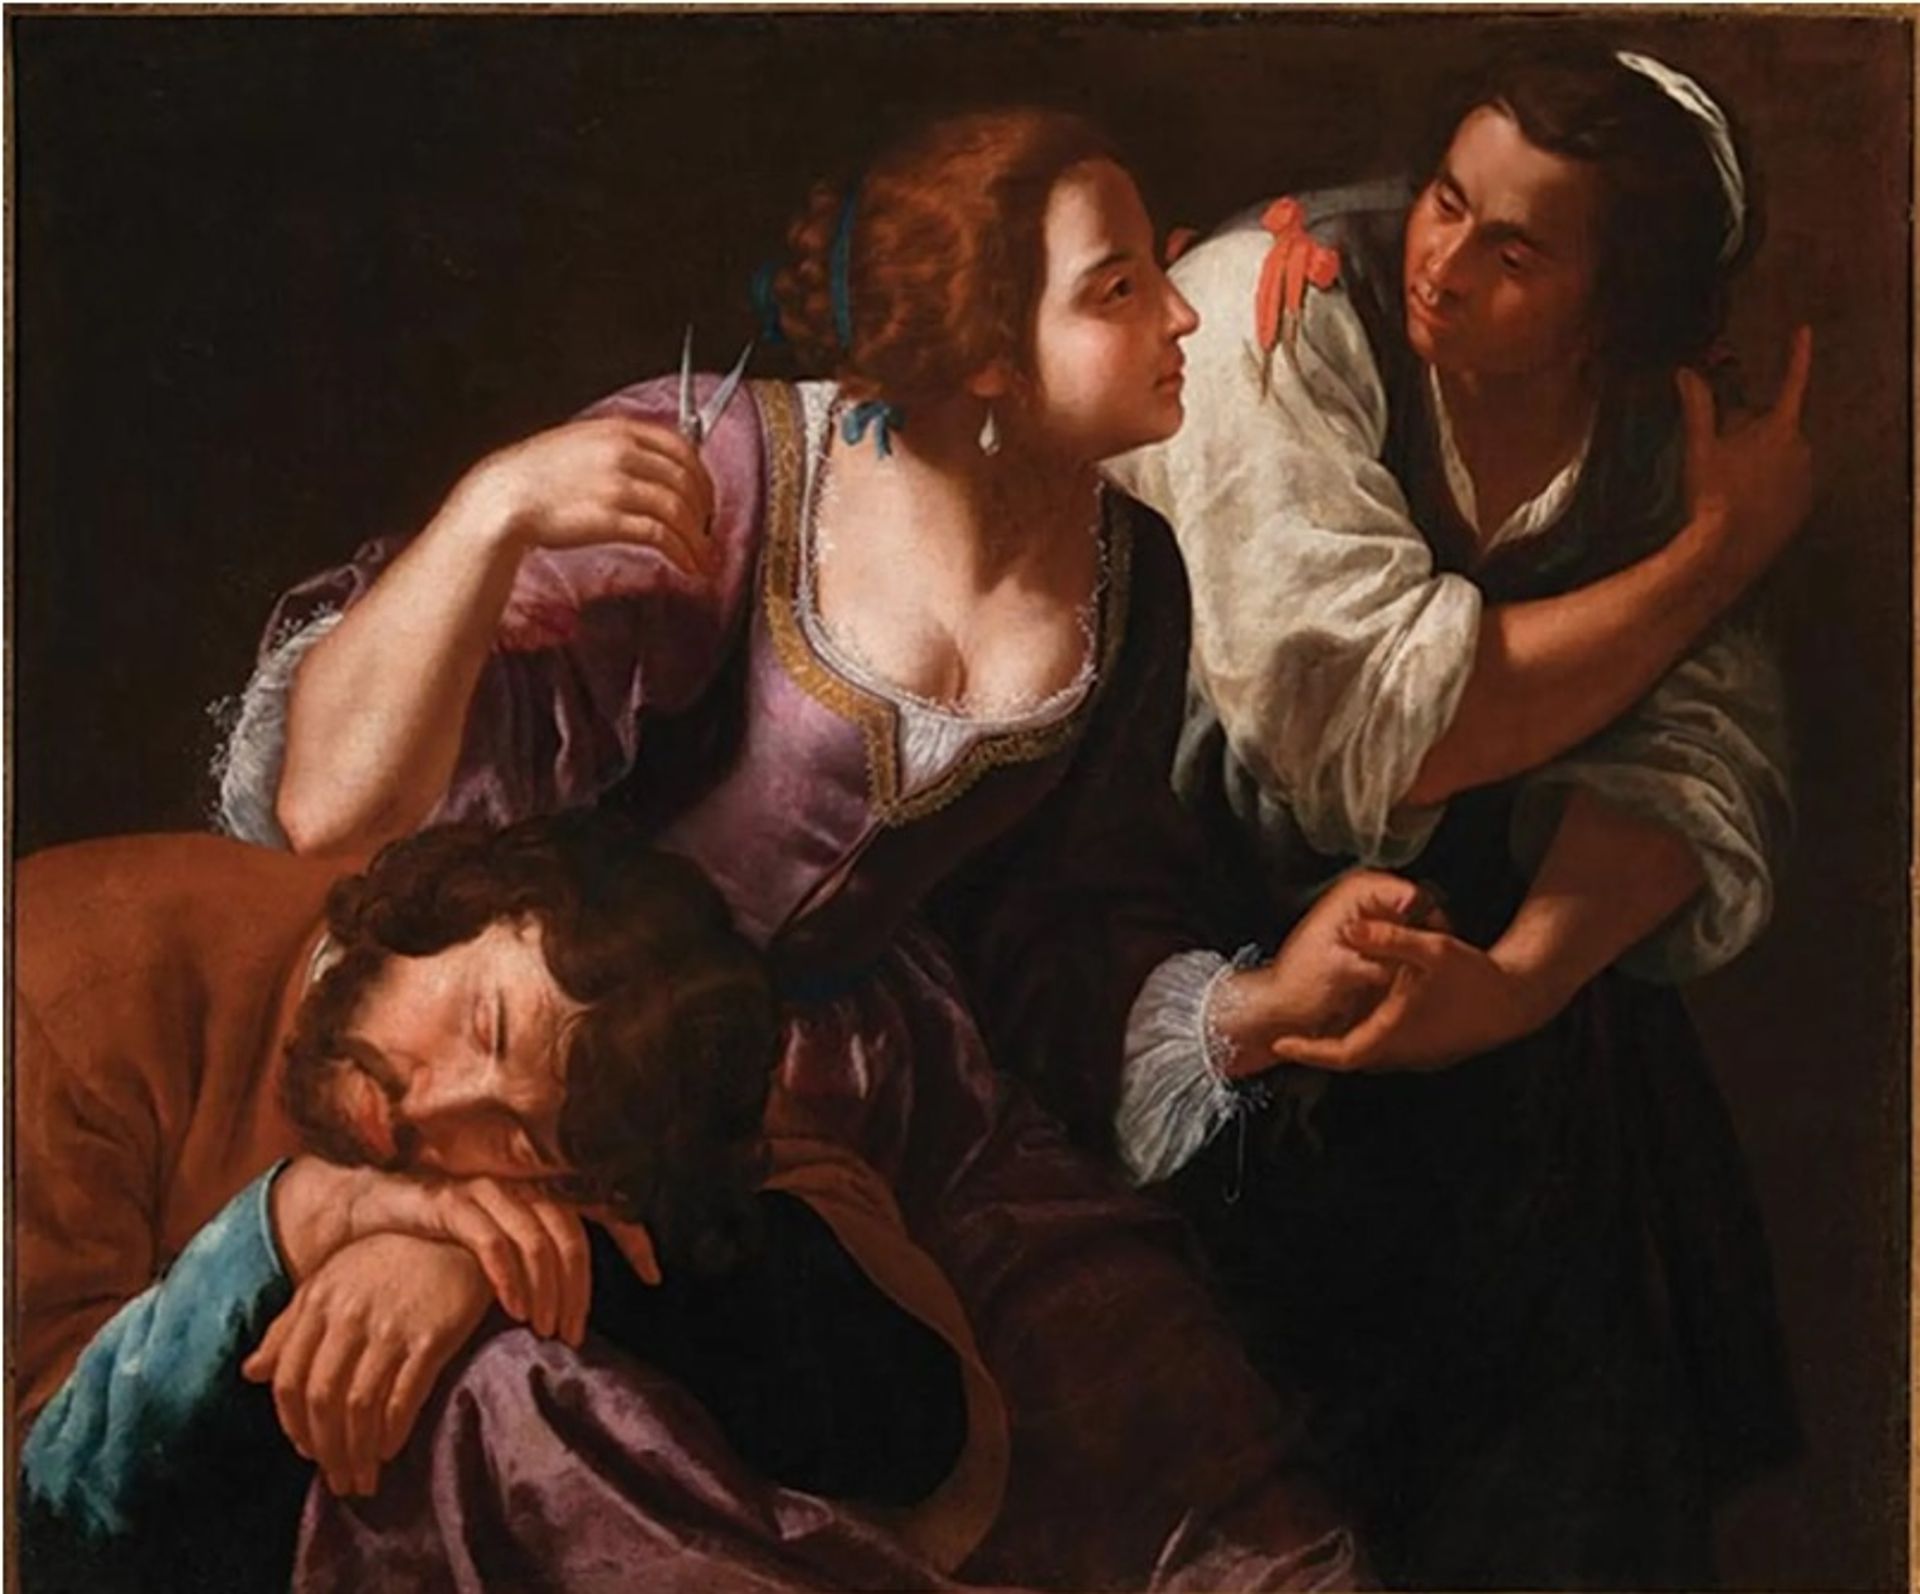 שמשון ודלילה של ארטמיסיה ג'נטיליסקי (בסביבות 1630-38) יוצג בתערוכה

Archivio dell'arte; צילום: Luciano Pedicini